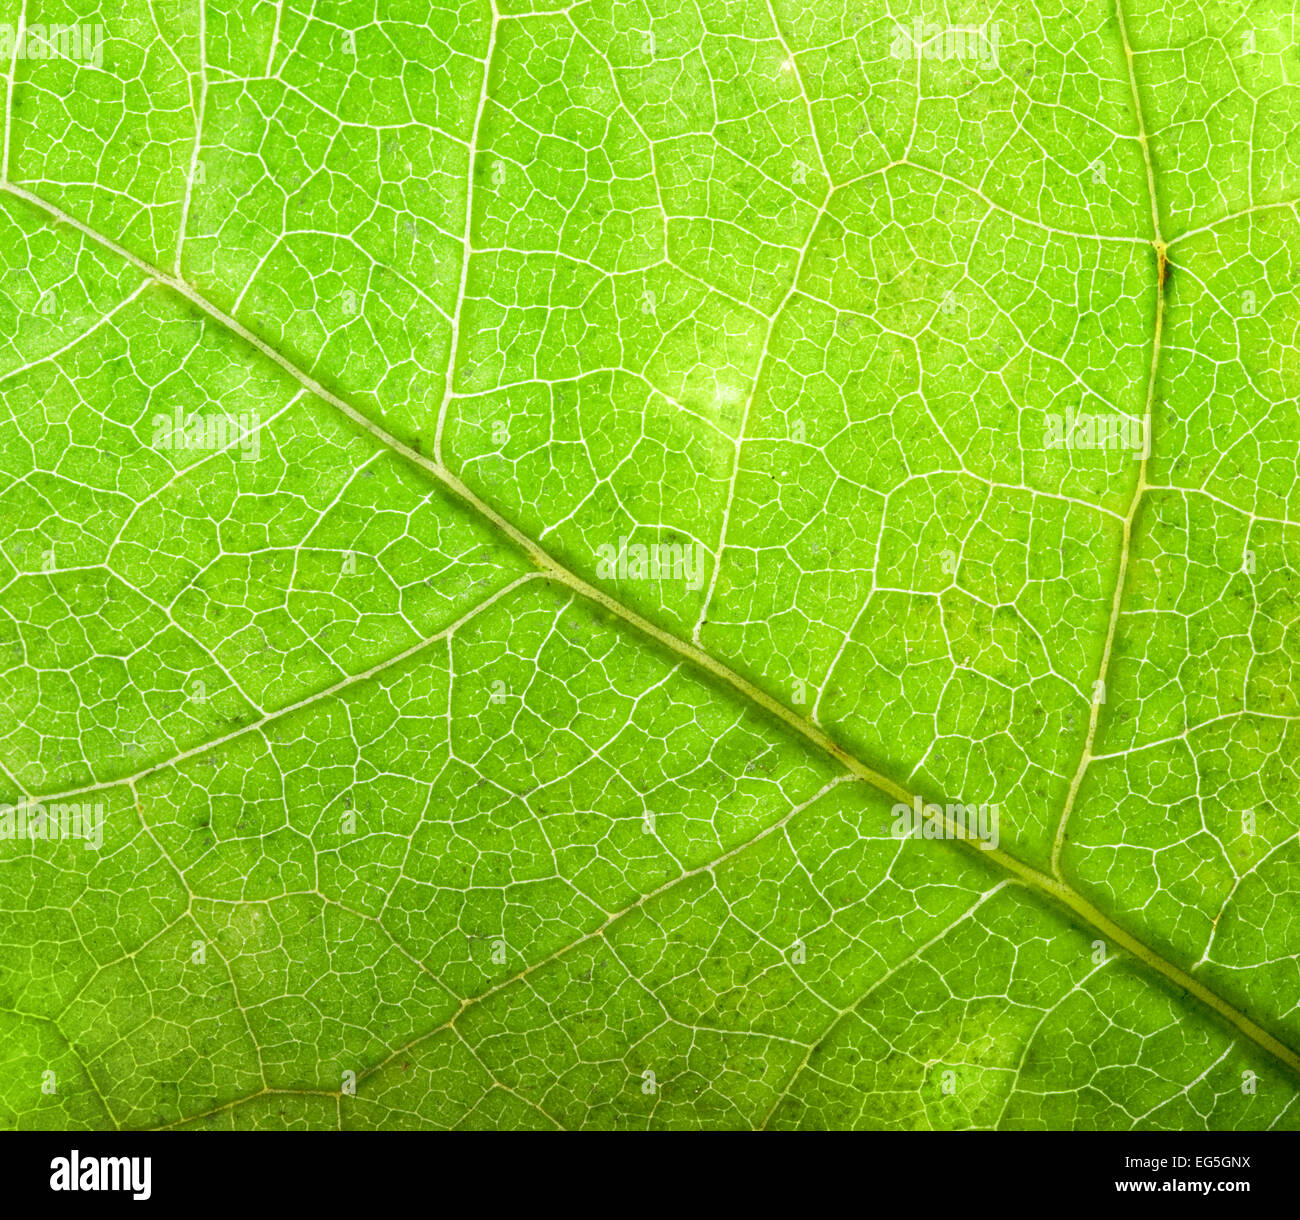 Grünes Blatt Nahaufnahme Hintergrund. Natürliche Struktur der Venen, hohe Auflösung. Stockfoto